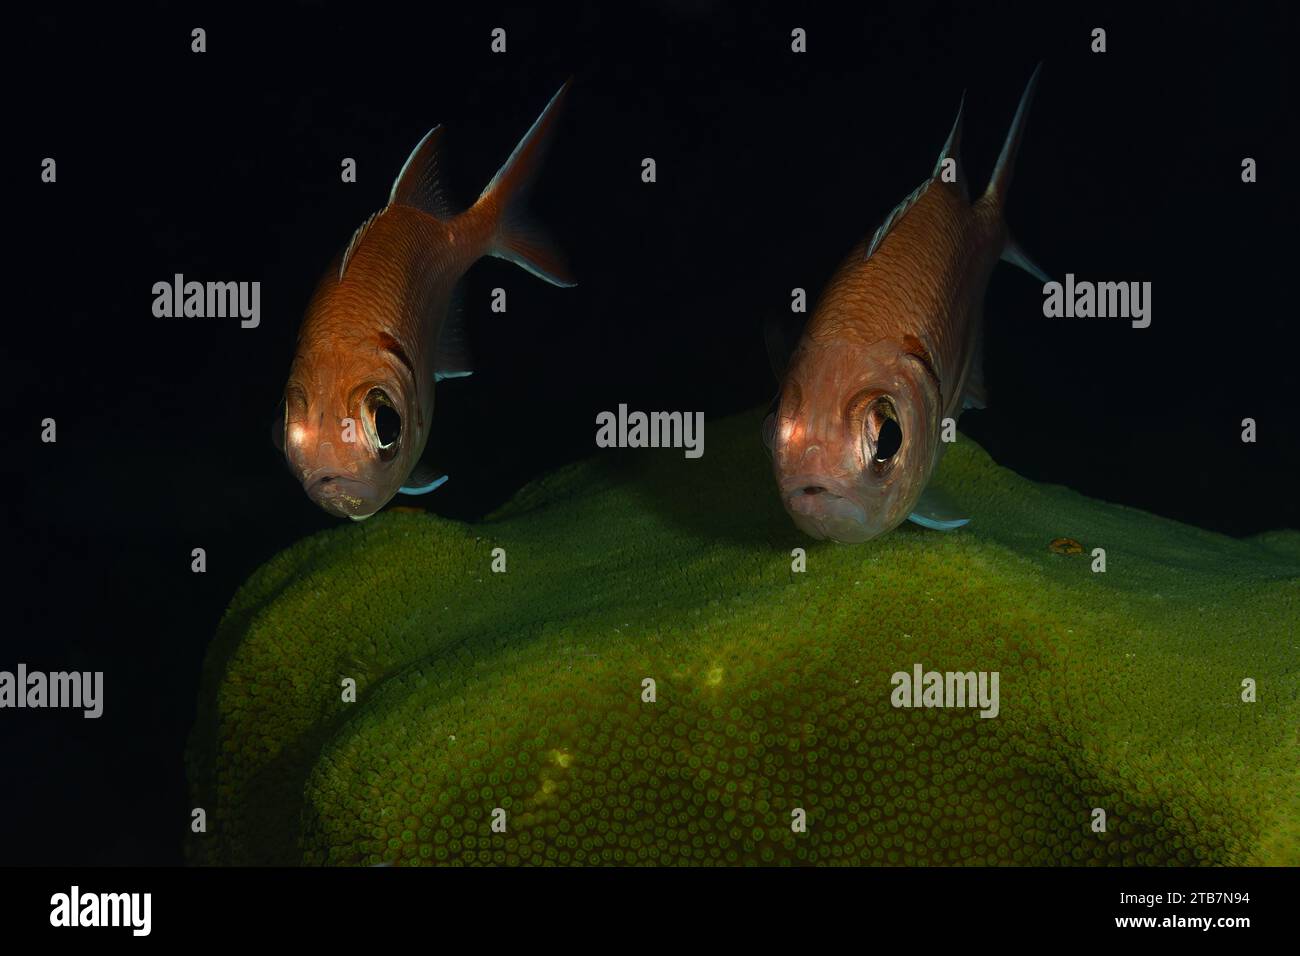 Ein Paar rötlicher Fische mit auffälligen Augen schwimmen über einem grünen Korallenriff und schaffen eine ruhige Unterwasserszene. Stockfoto